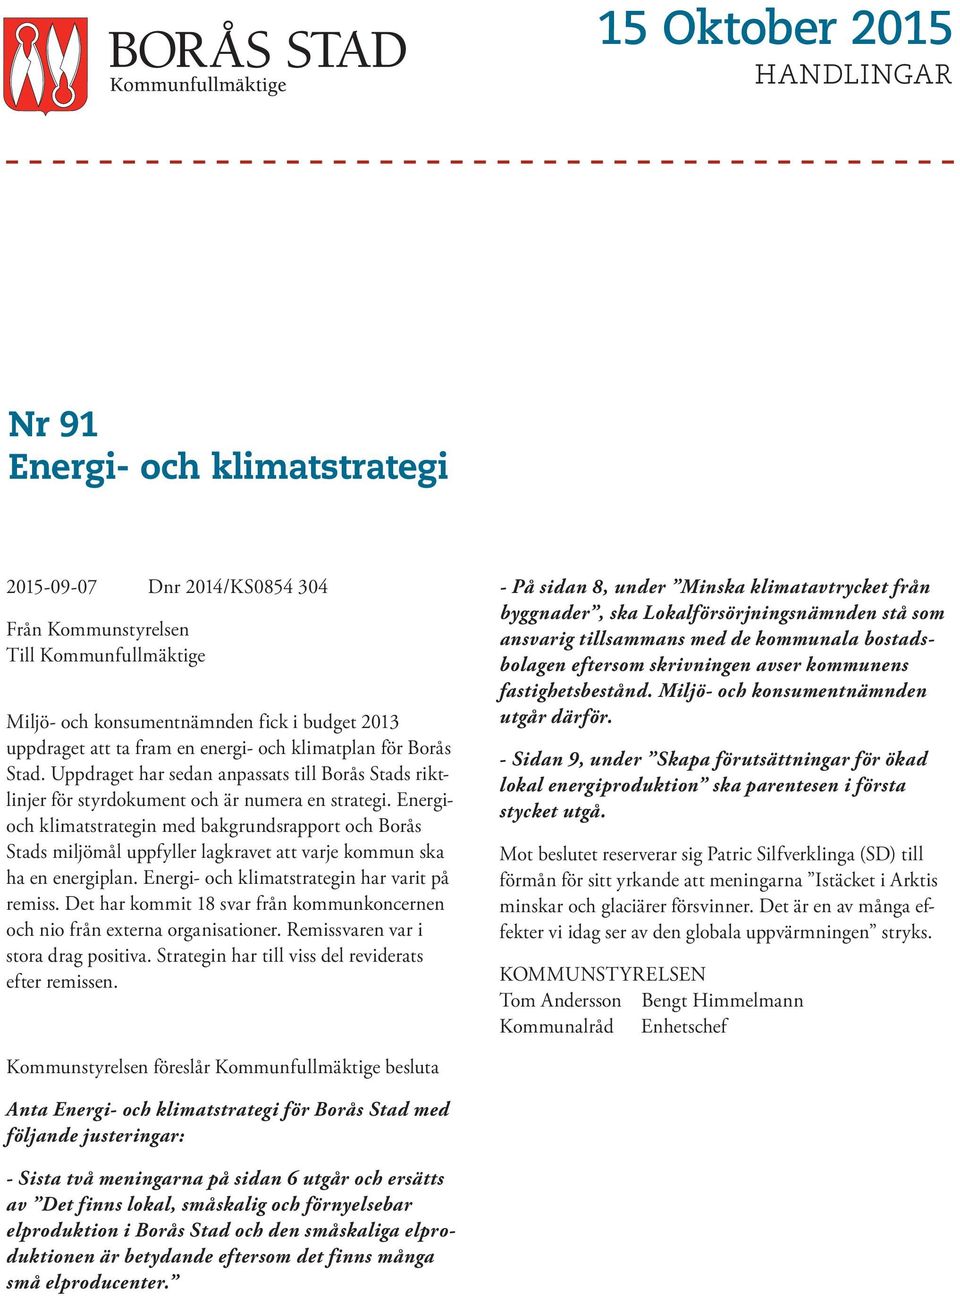 Energioch klimatstrategin med bakgrundsrapport och Borås Stads miljömål uppfyller lagkravet att varje kommun ska ha en energiplan. Energi- och klimatstrategin har varit på remiss.